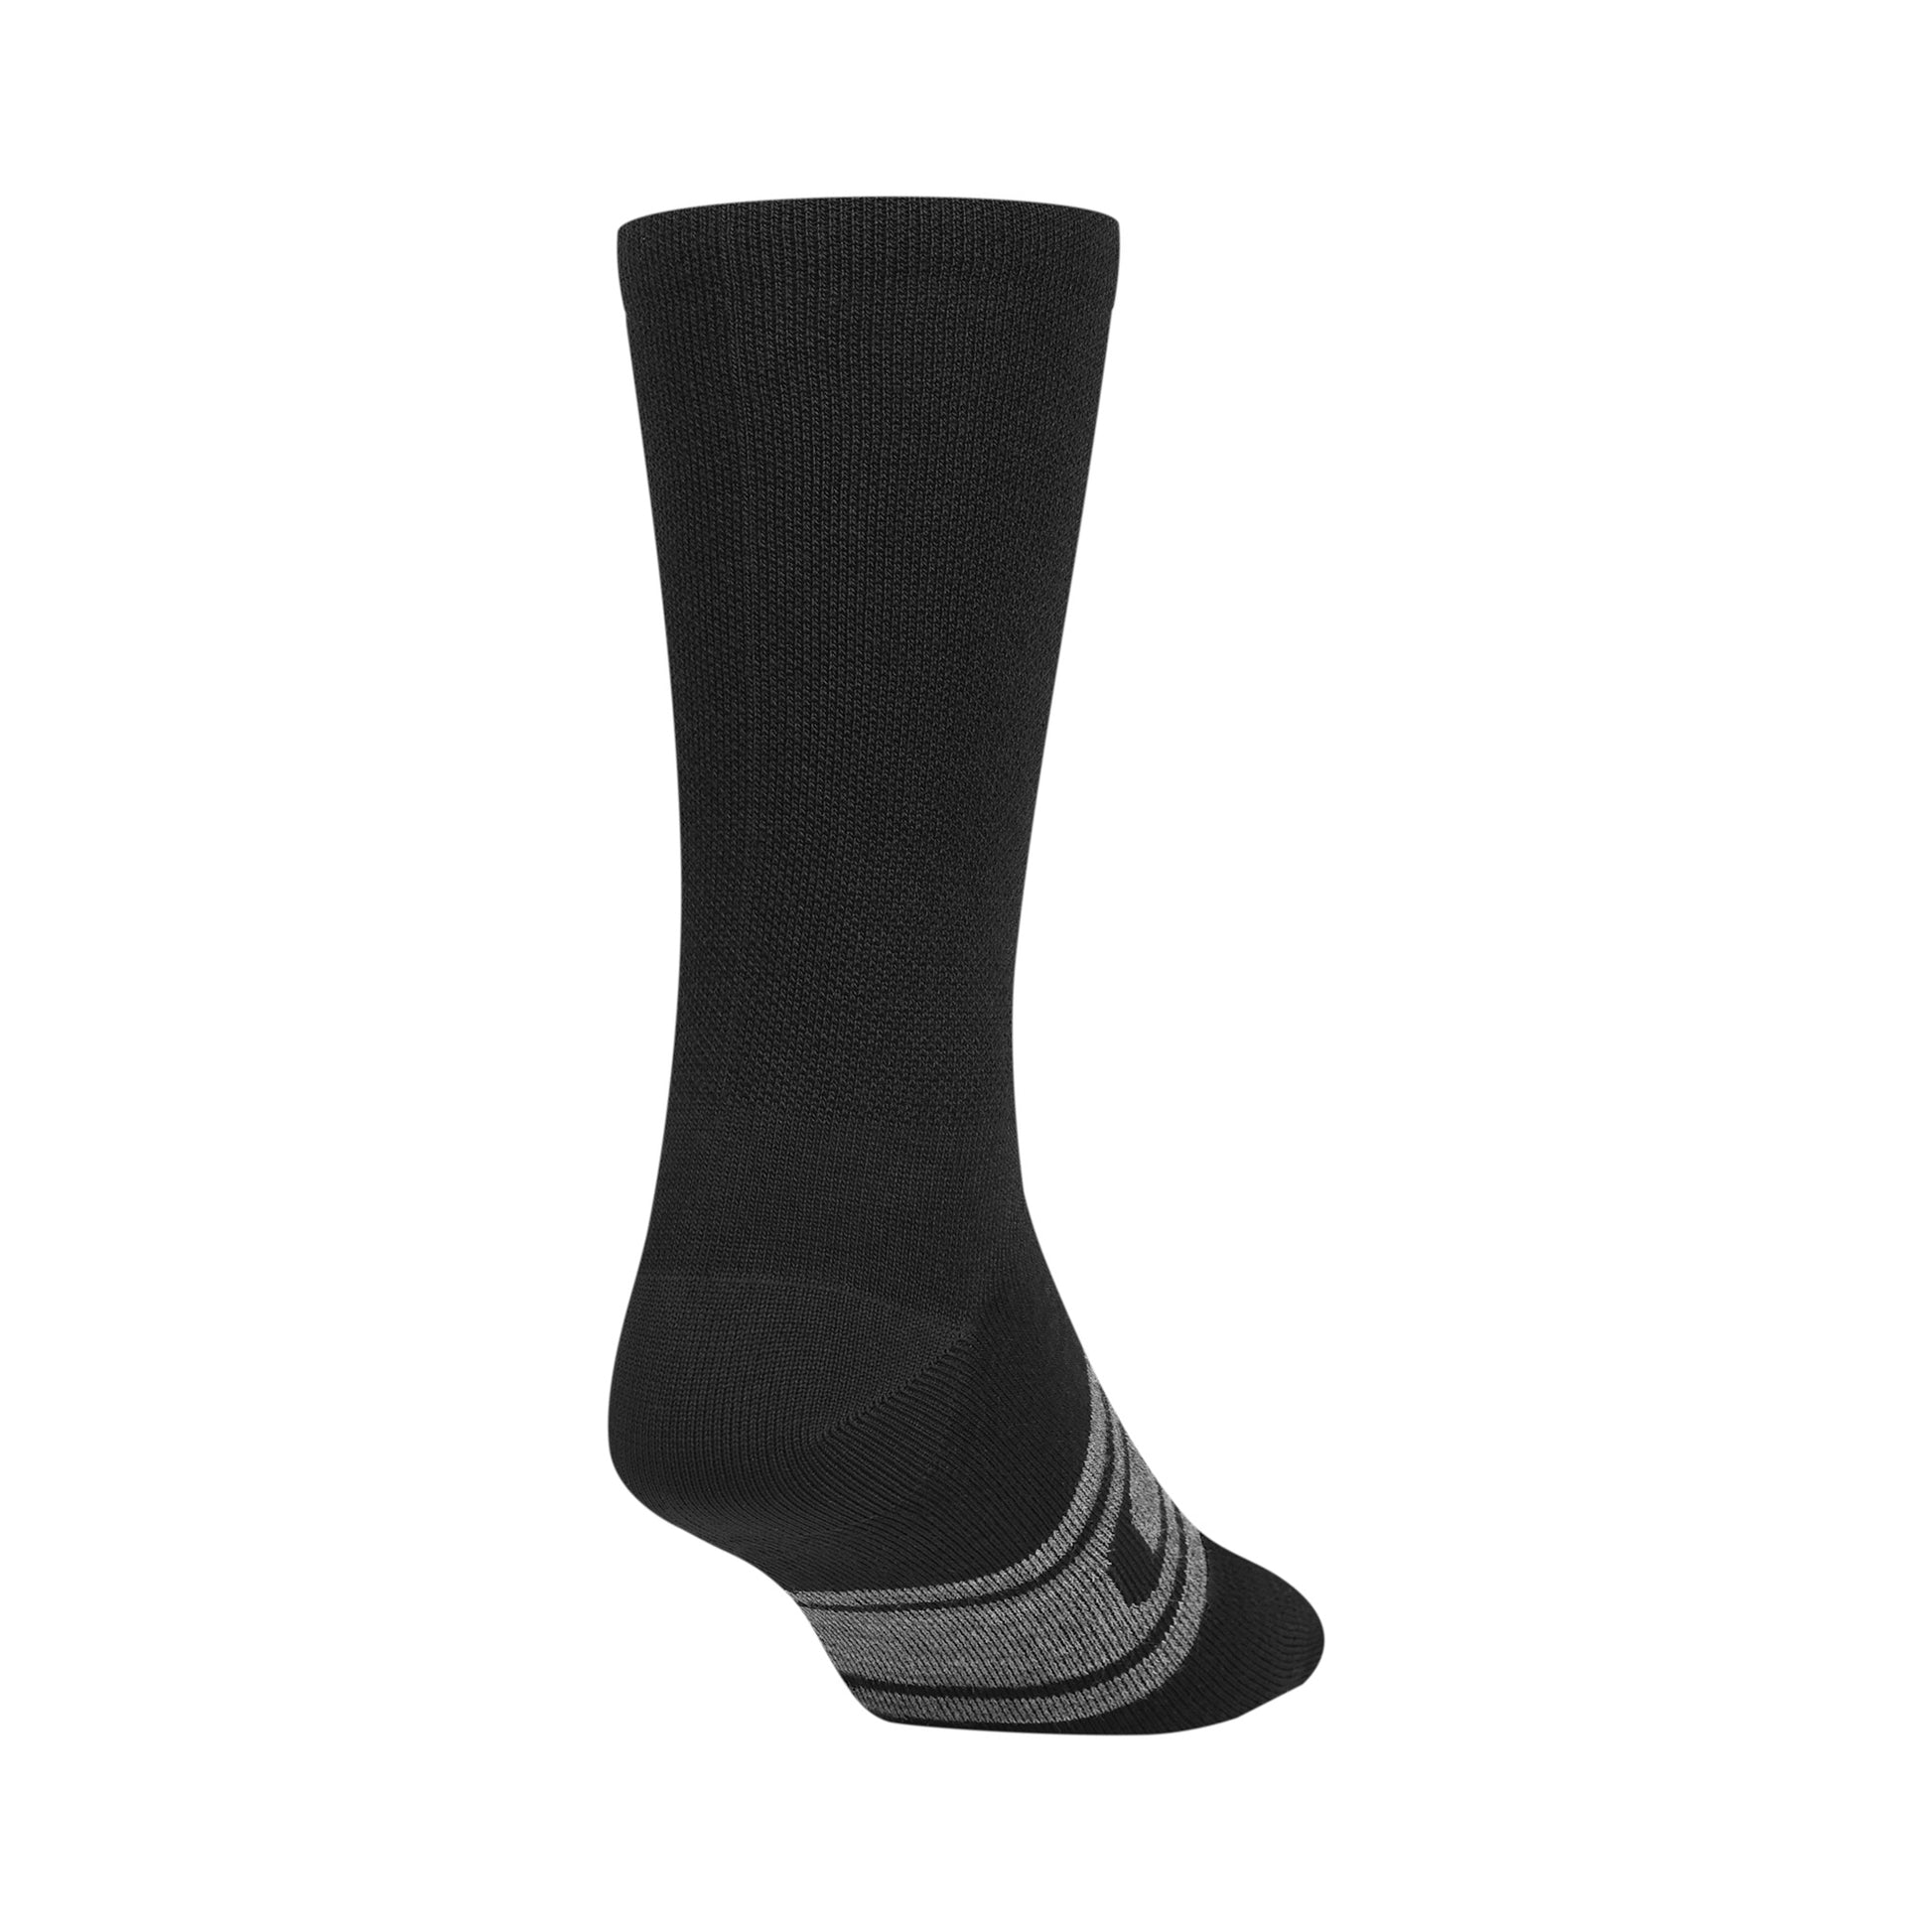 Giro Seasonal Merino Wool Sock Black Charcoal Bike Socks